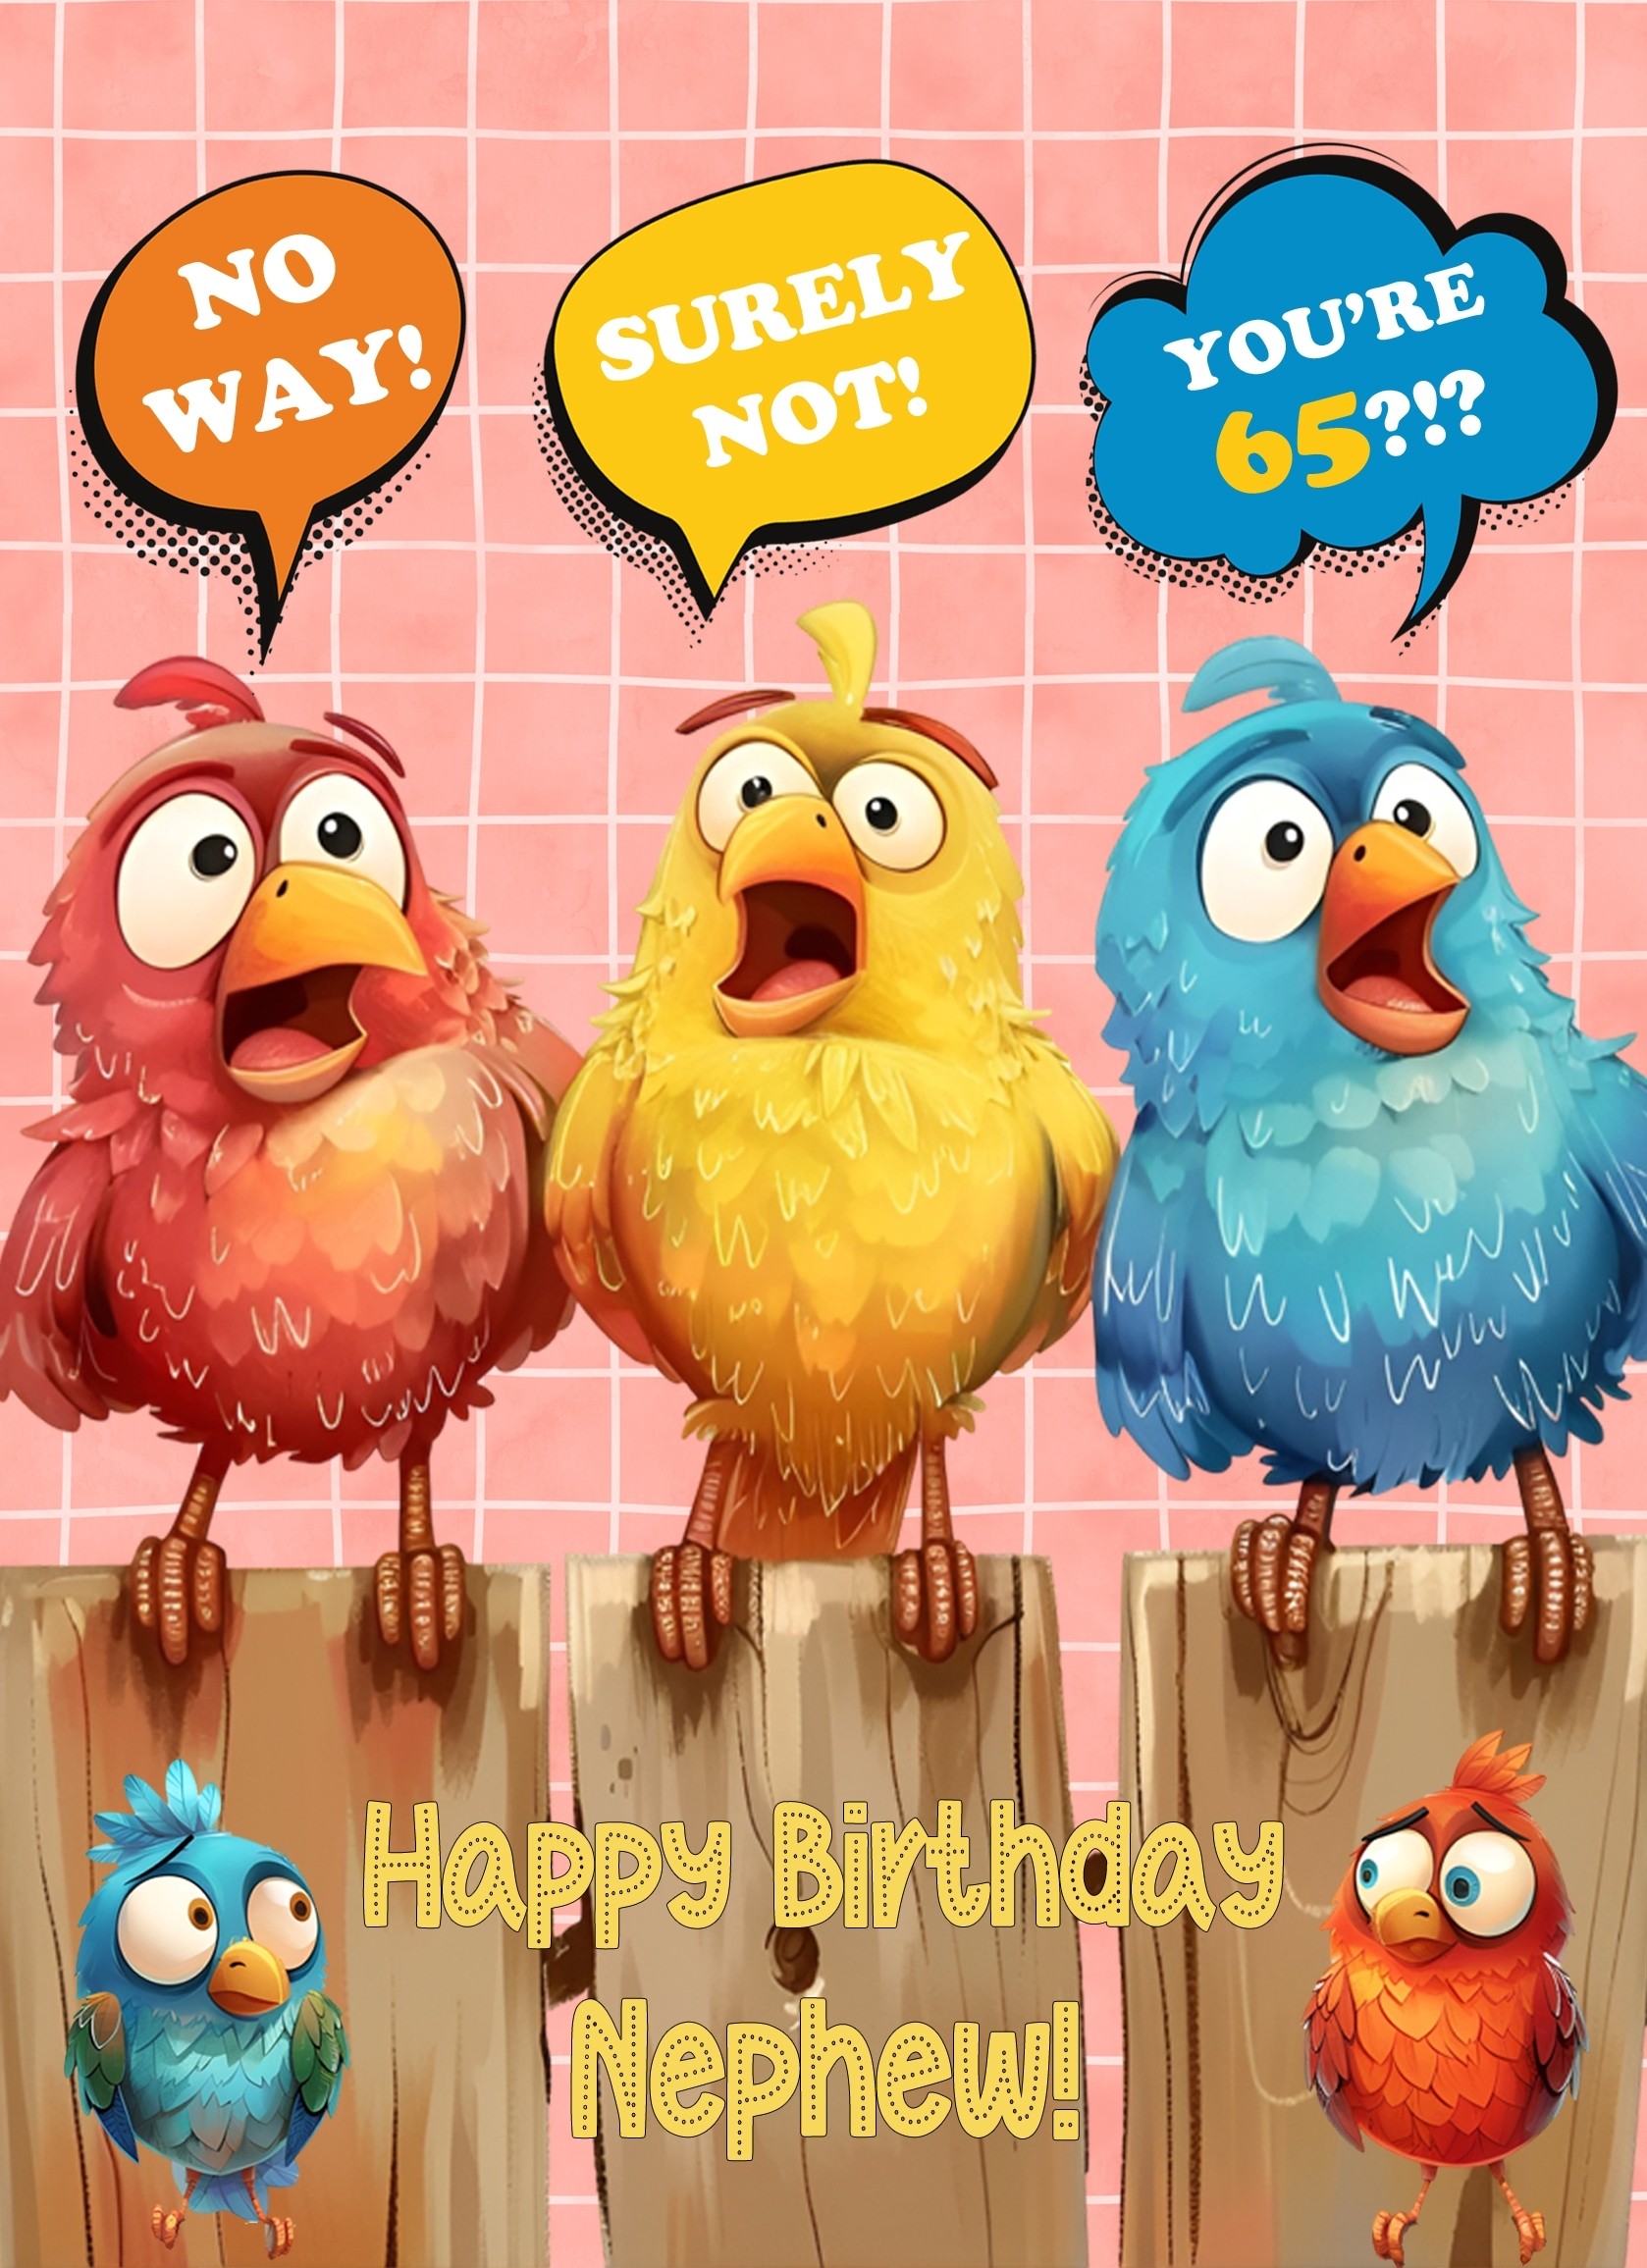 Nephew 65th Birthday Card (Funny Birds Surprised)